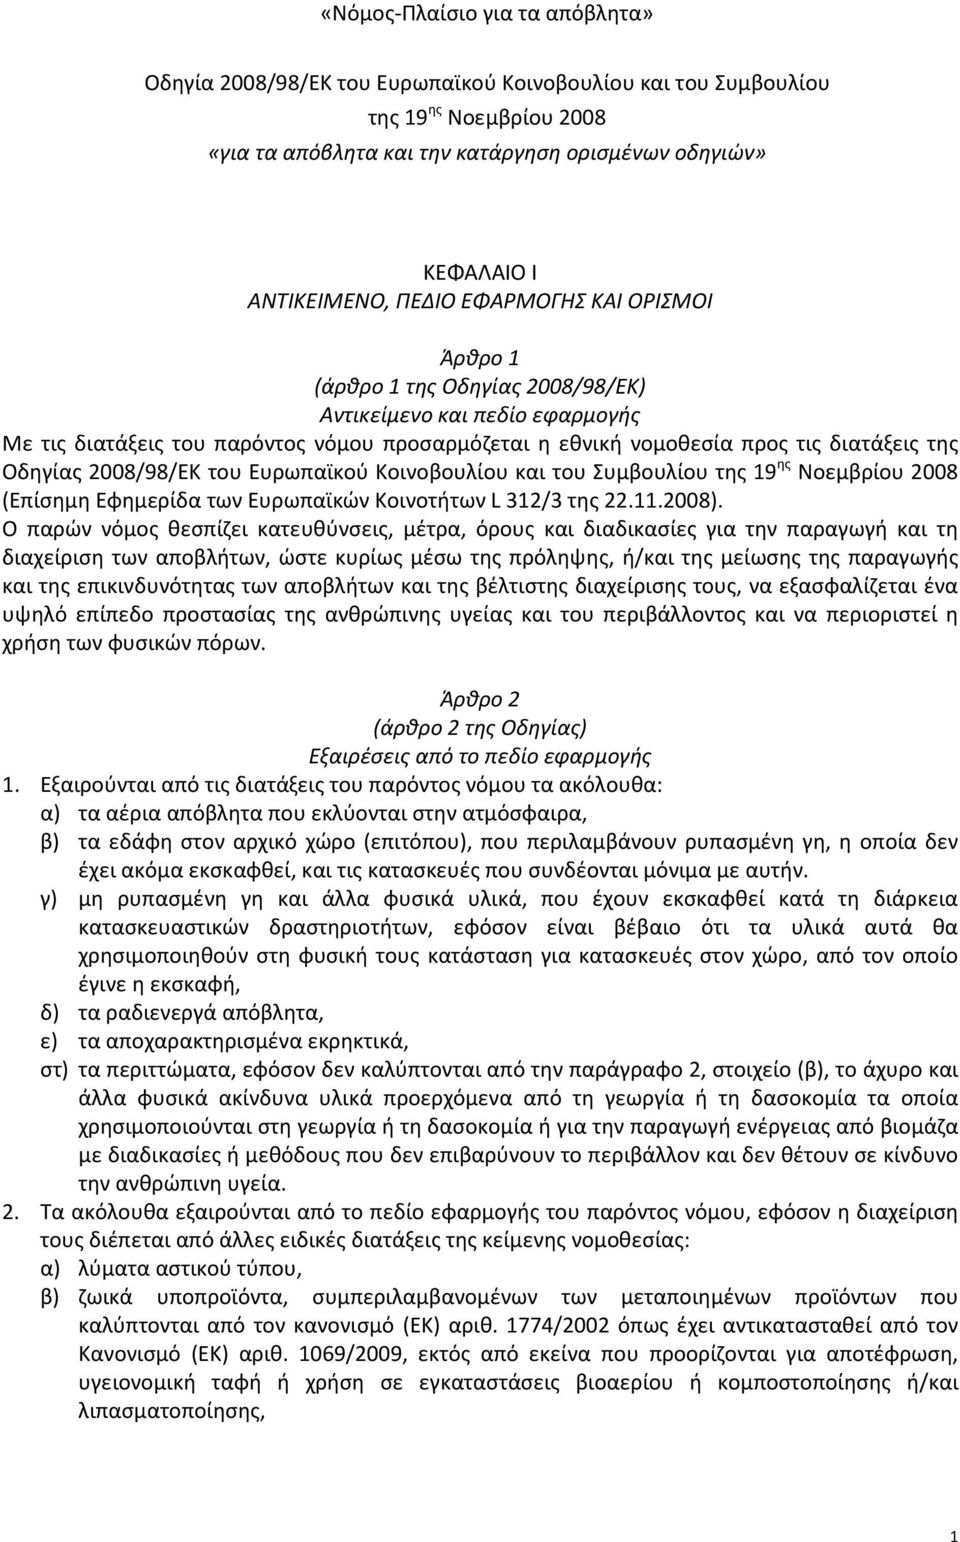 Οδηγίας 2008/98/ΕΚ του Ευρωπαϊκού Κοινοβουλίου και του Συμβουλίου της 19 ης Νοεμβρίου 2008 (Επίσημη Εφημερίδα των Ευρωπαϊκών Κοινοτήτων L 312/3 της 22.11.2008).